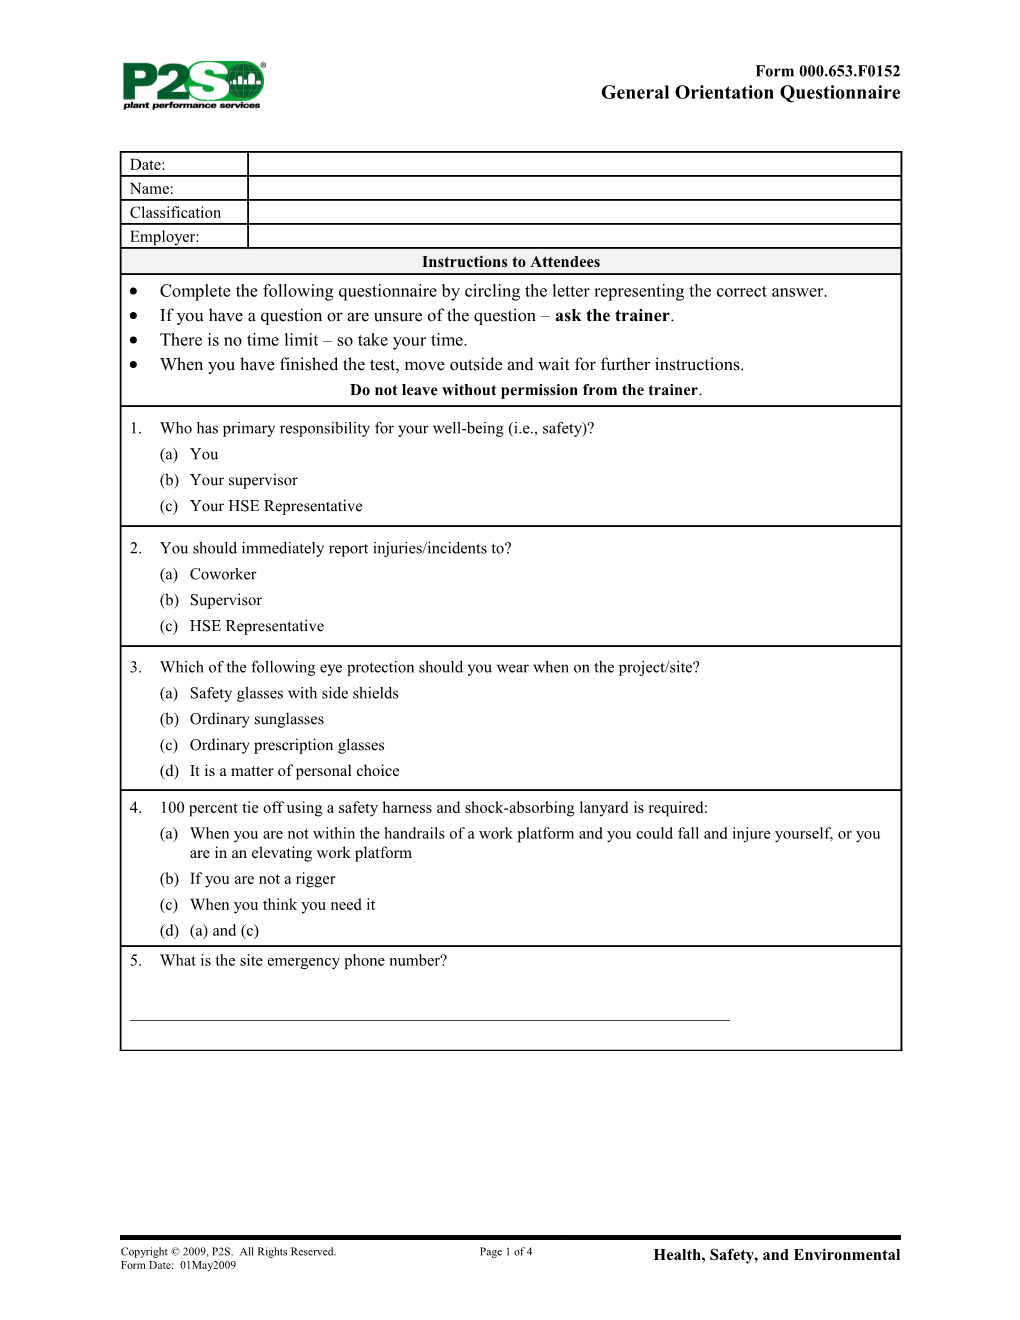 General Orientation Questionnaire